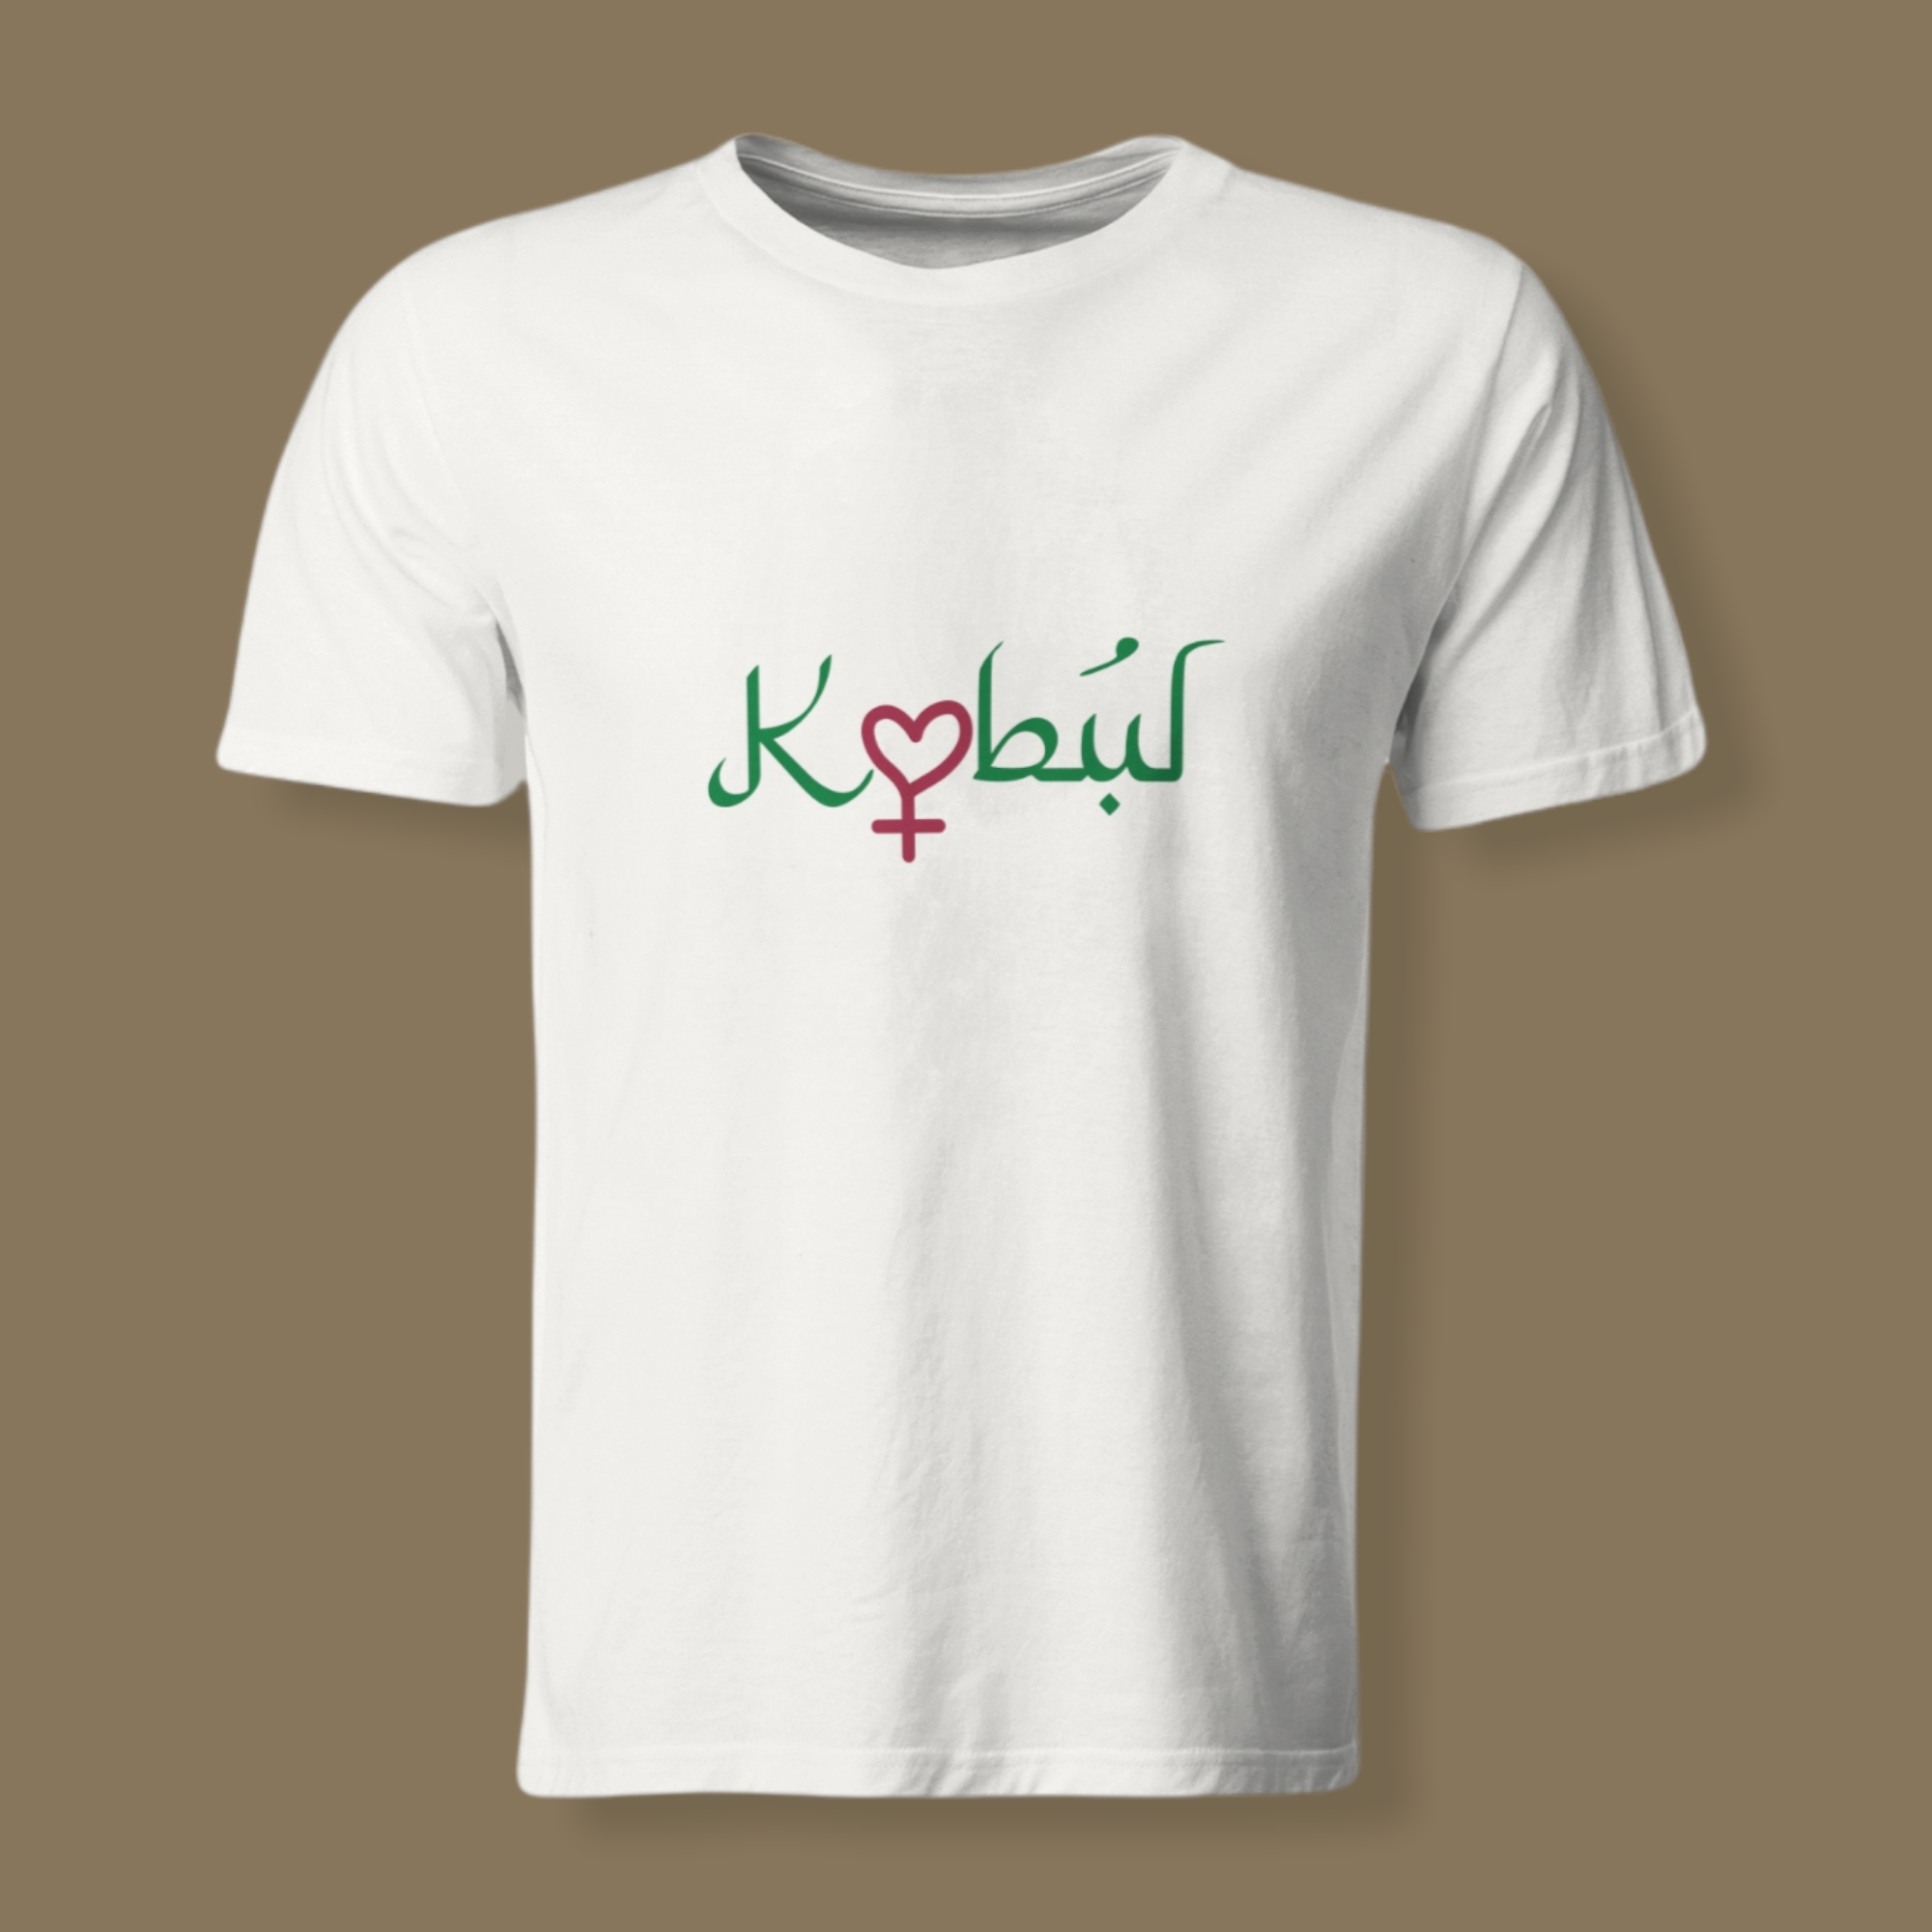 T-shirt til støtte for Afghanistans kvinder og børn 2021.